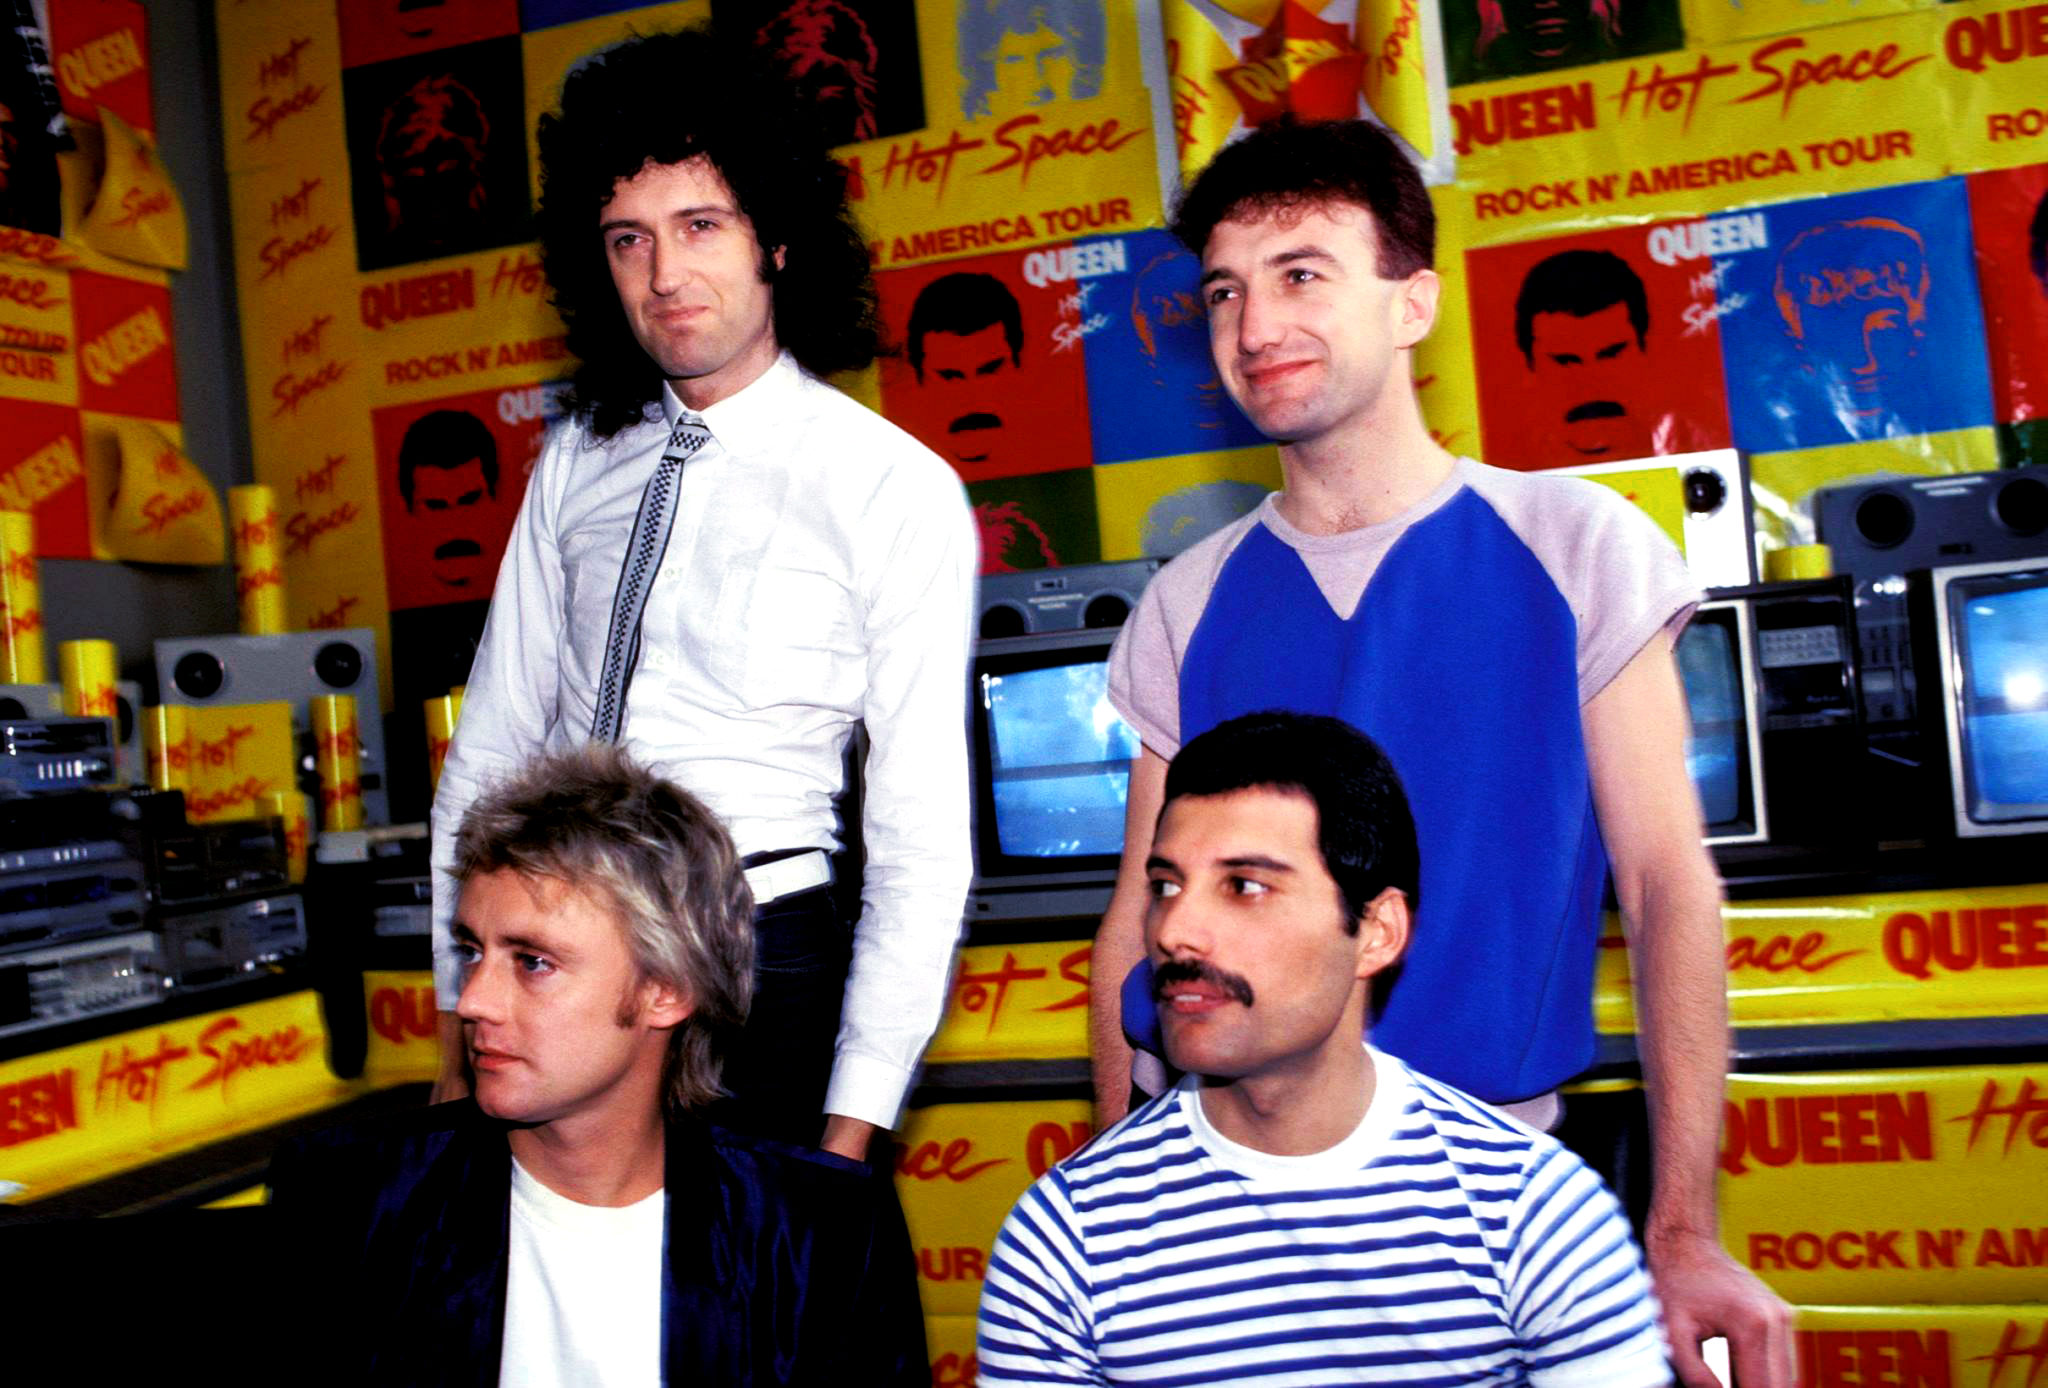 Hot Space album sottovalutato Queen